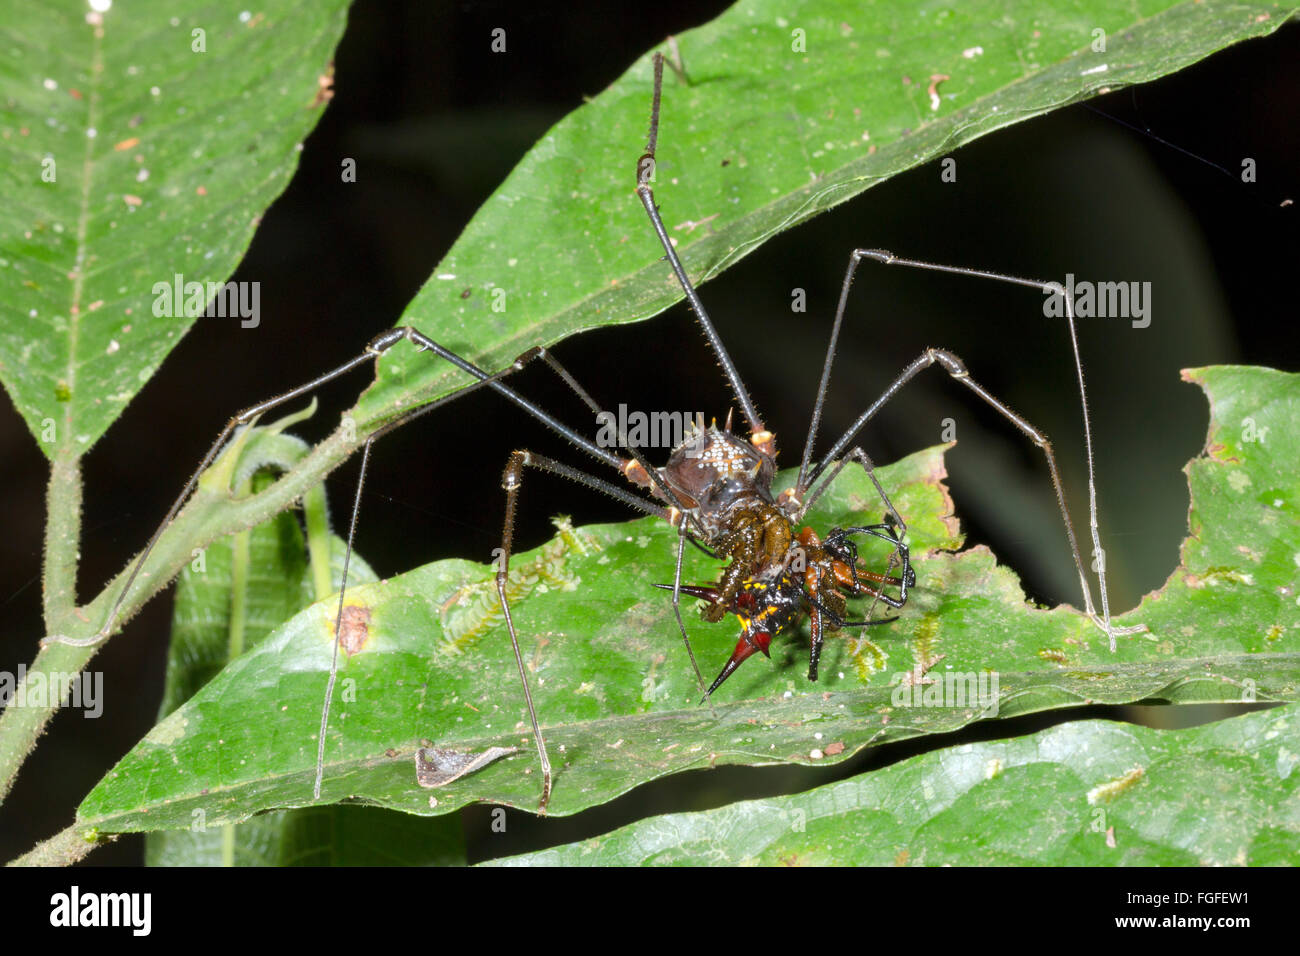 Harvestman tropical géant (Phalangid) se nourrissent d'une araignée épineuse (Micranthena sp.) dans la forêt tropicale, Pastaza province, l'Équateur Banque D'Images